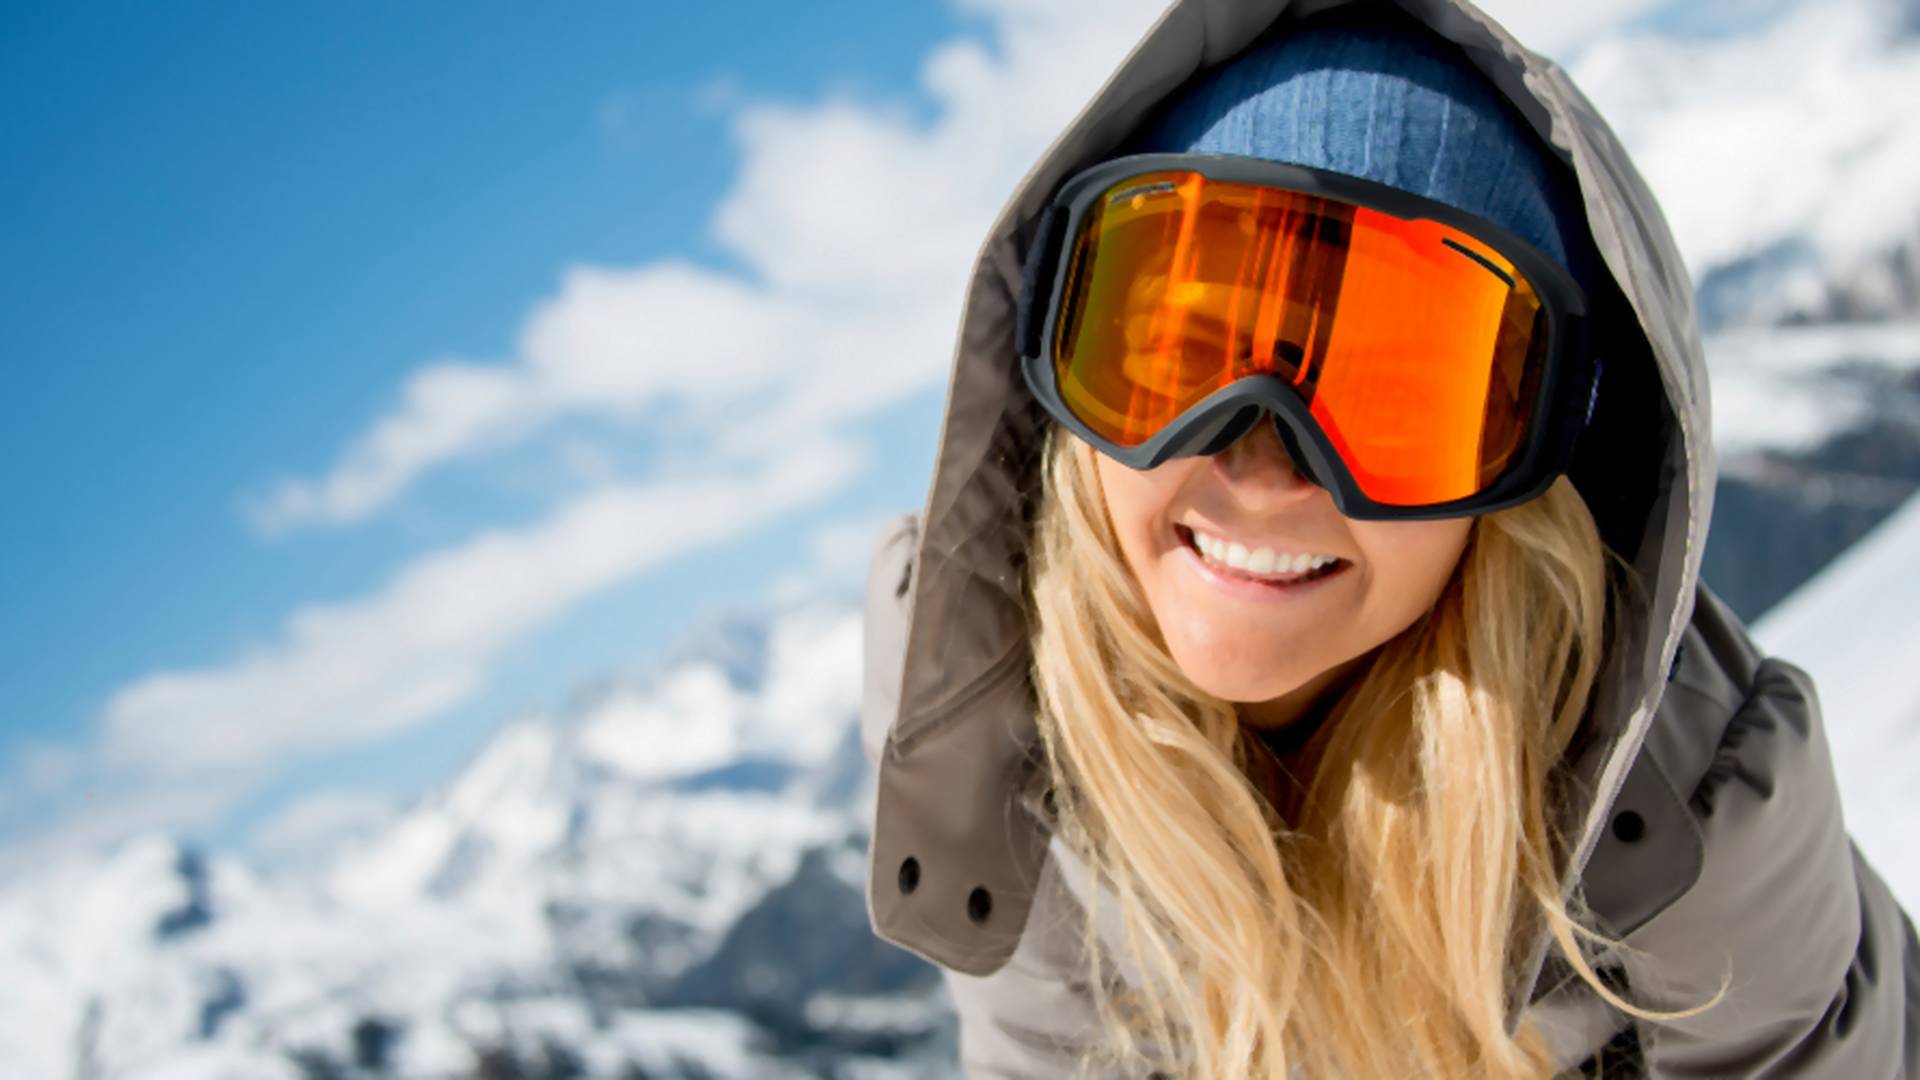 Przygotuj swoje ciało na wyjazd narciarski! Propozycje ćwiczeń wzmacniających sylwetkę